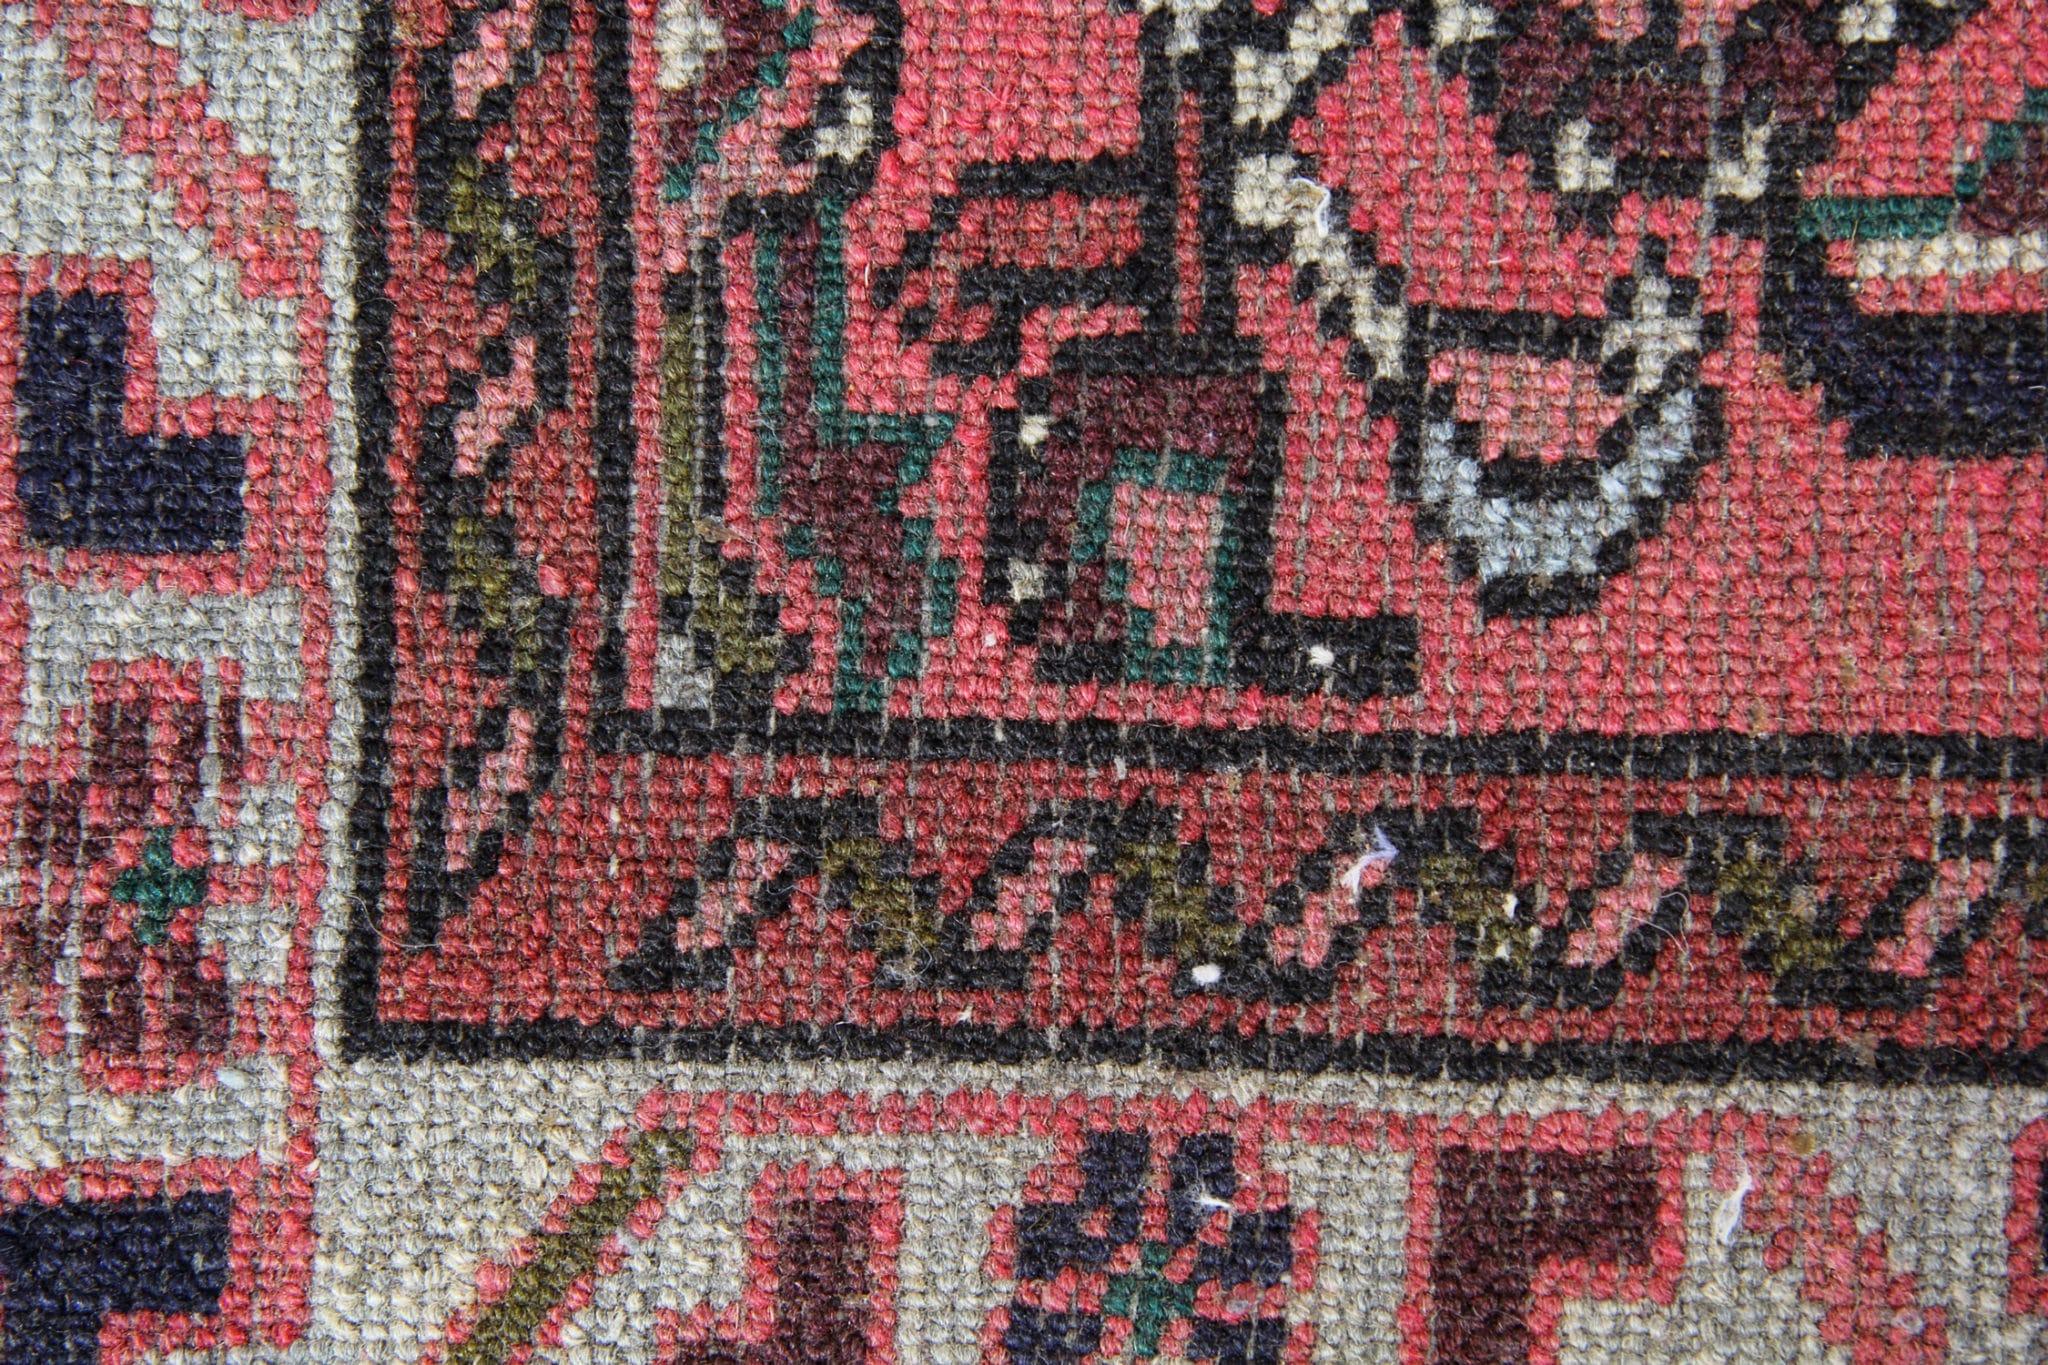 Wir stellen unseren exquisiten Vintage-Teppichläufer vor, ein atemberaubendes Stück, das das reiche Erbe und die Handwerkskunst orientalischer Teppiche verkörpert. Dieser traditionelle Läufer besticht durch sein fesselndes, antikes Muster, das von